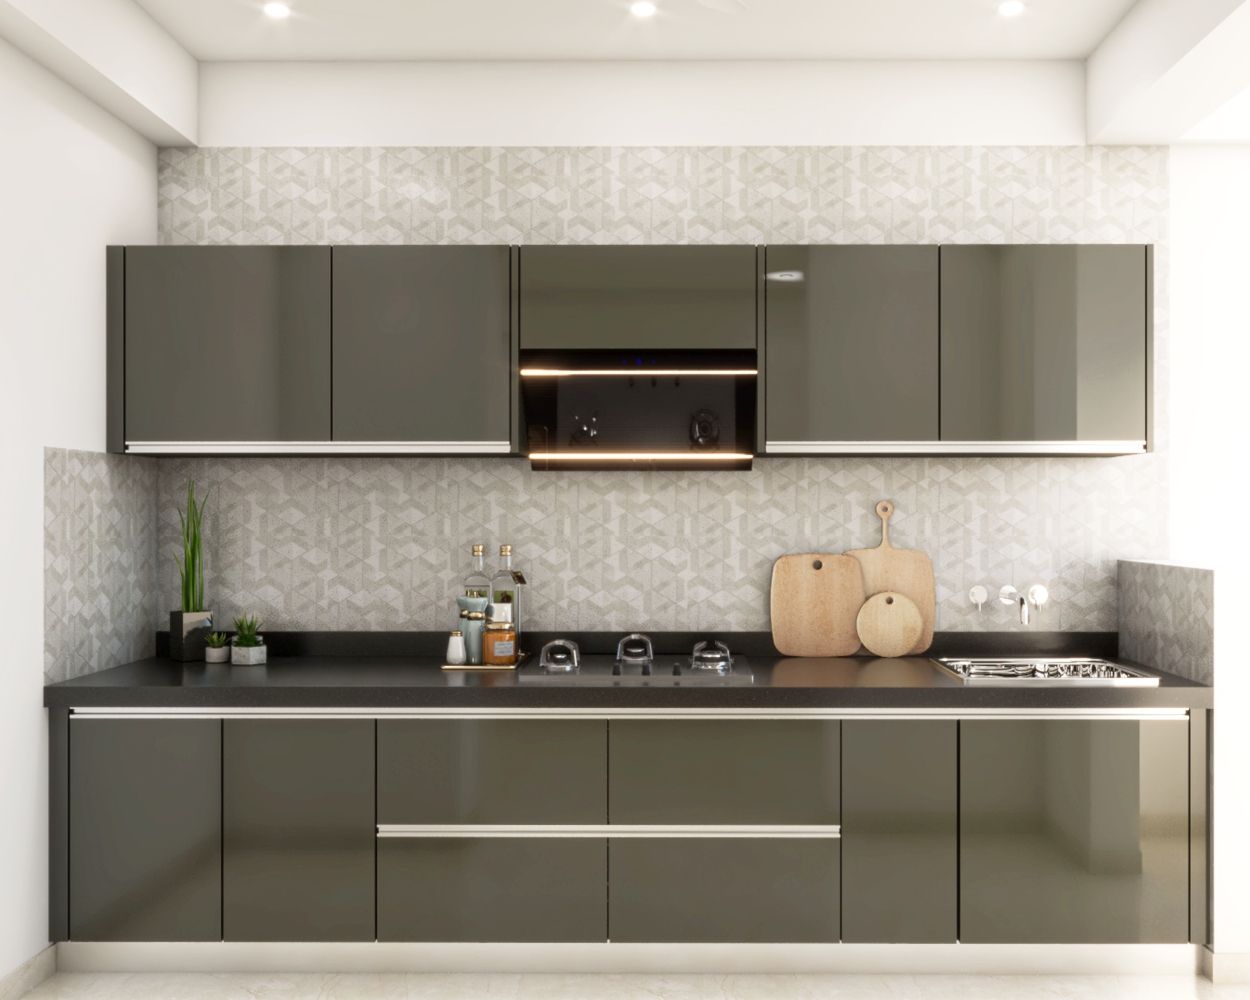 Modern Gothic Grey Straight Kitchen Design With G Profile Handles